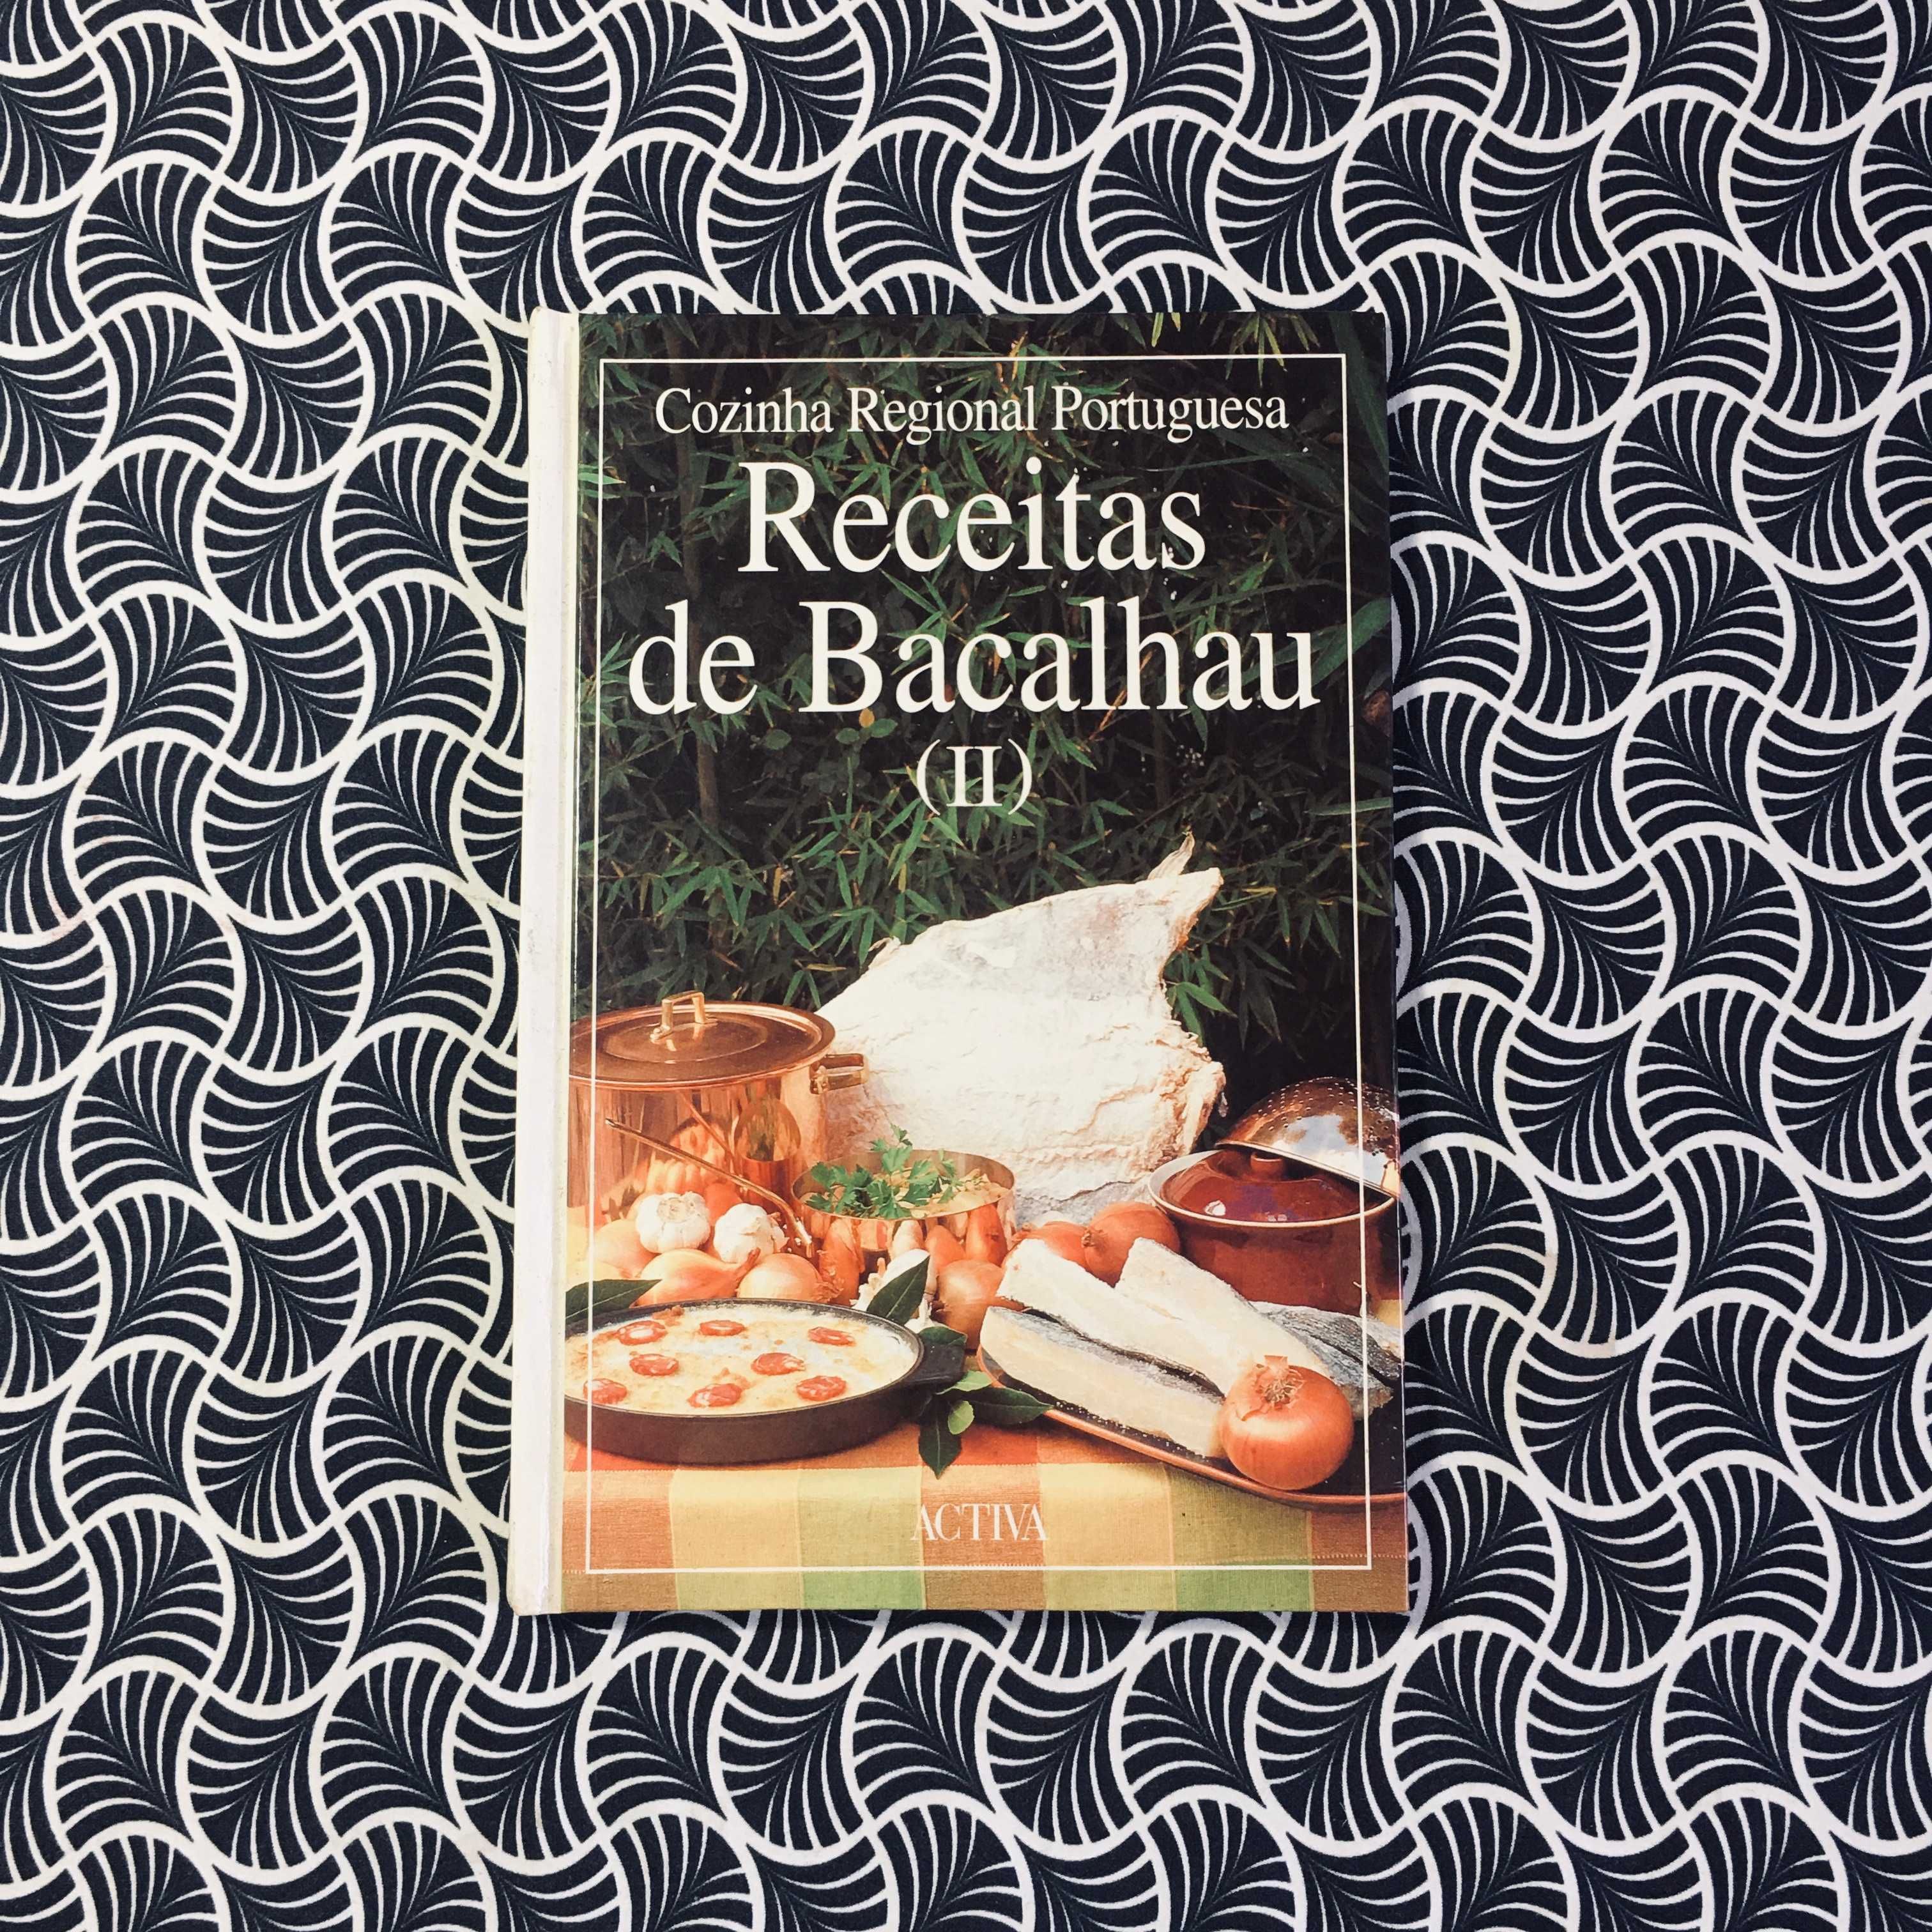 Cozinha Regional Portuguesa: Receitas de Bacalhau (II)